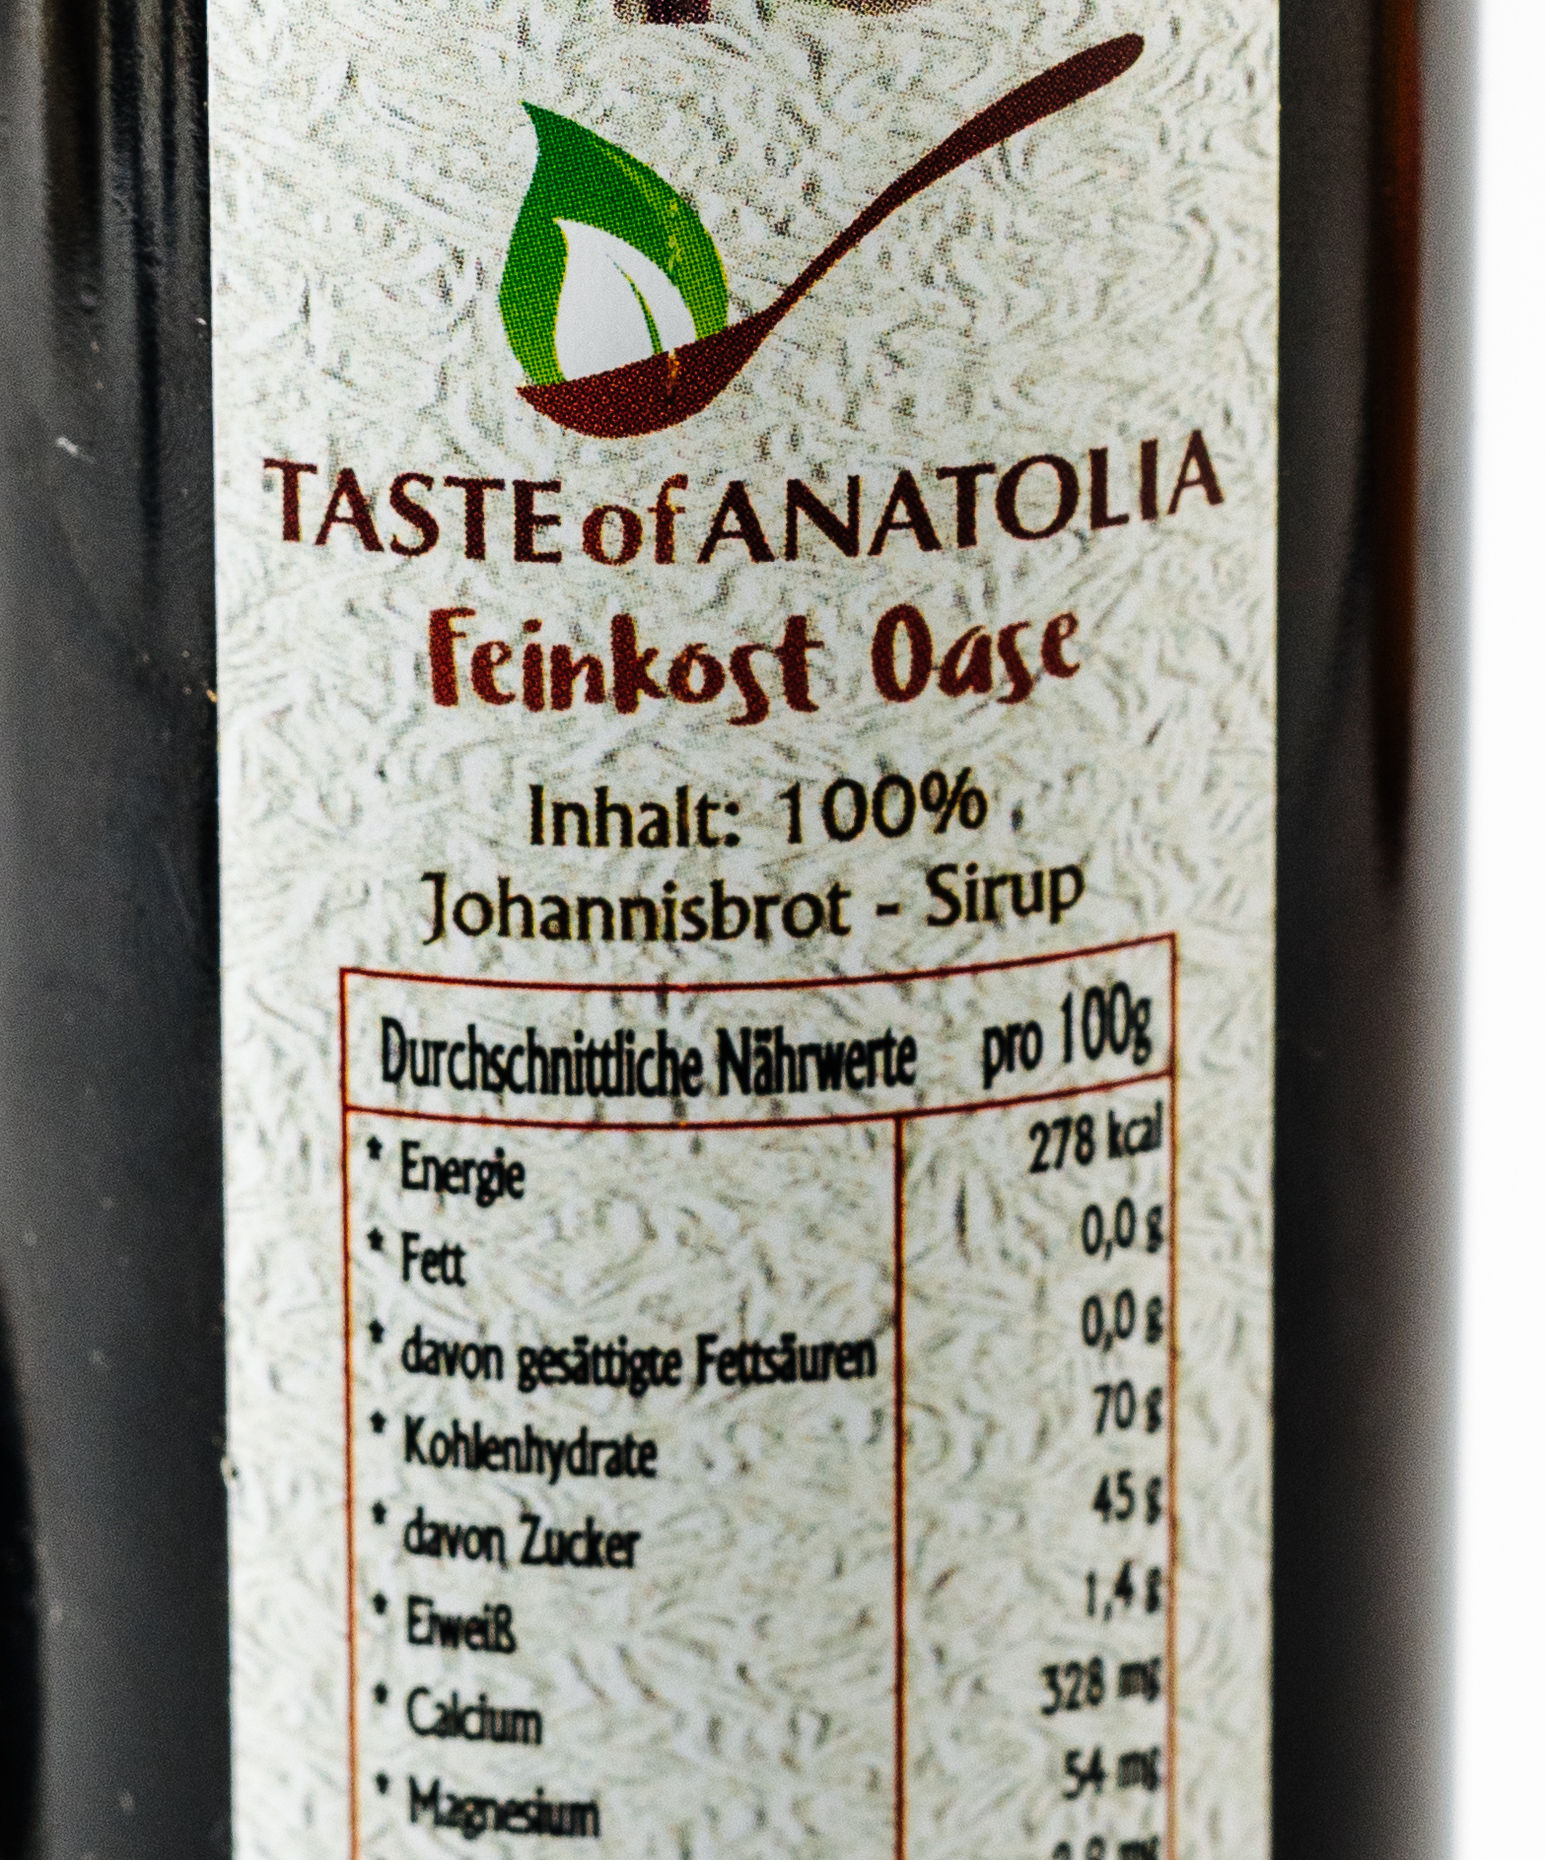 Taste of Anatolia Johannisbrotmelasse